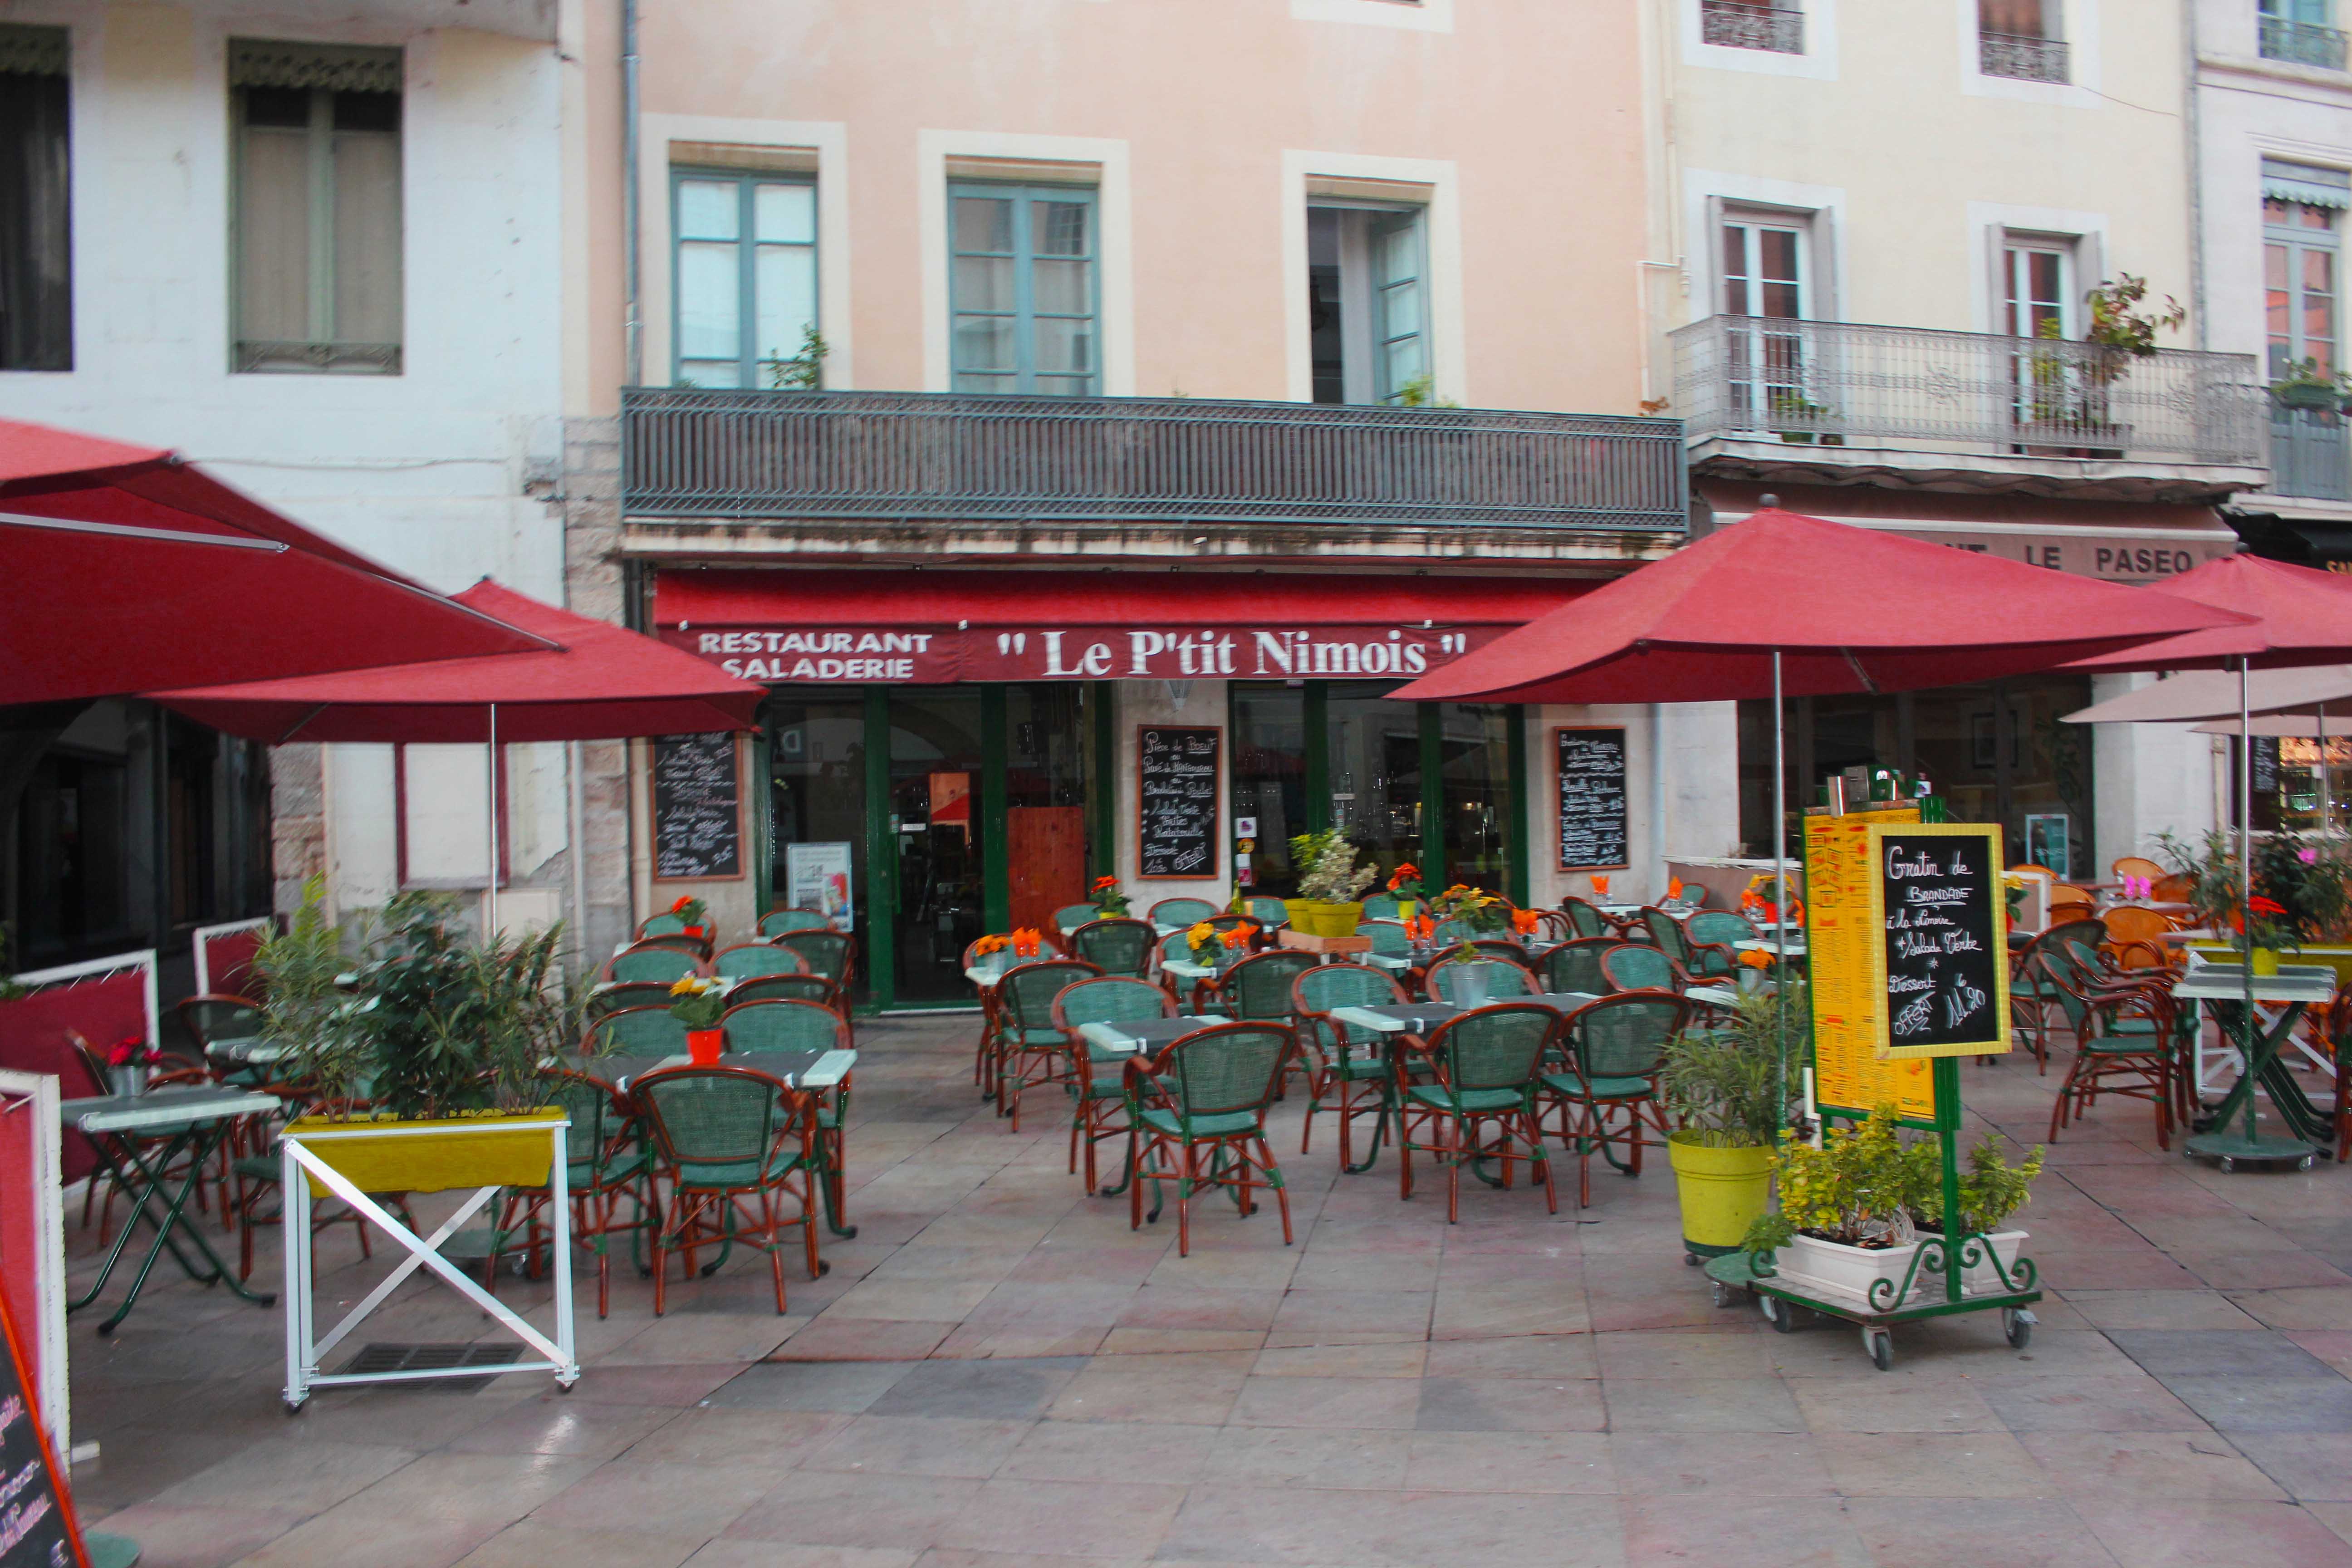 Restaurantes e bares em Nimes. A cidade abriga uma boa quantidade deles